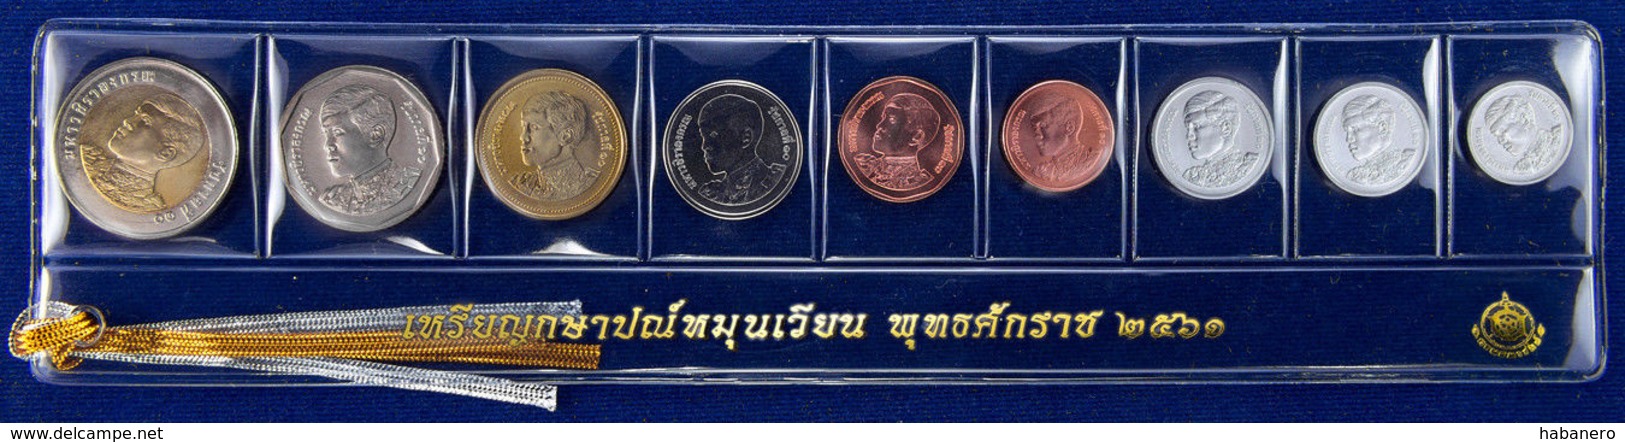 THAILAND 2018 9 COIN SET KING MAHA VAJIRALONGKORN UNC MINT SCARCE SET WITH 1, 5, 10 SATANG - Thailand